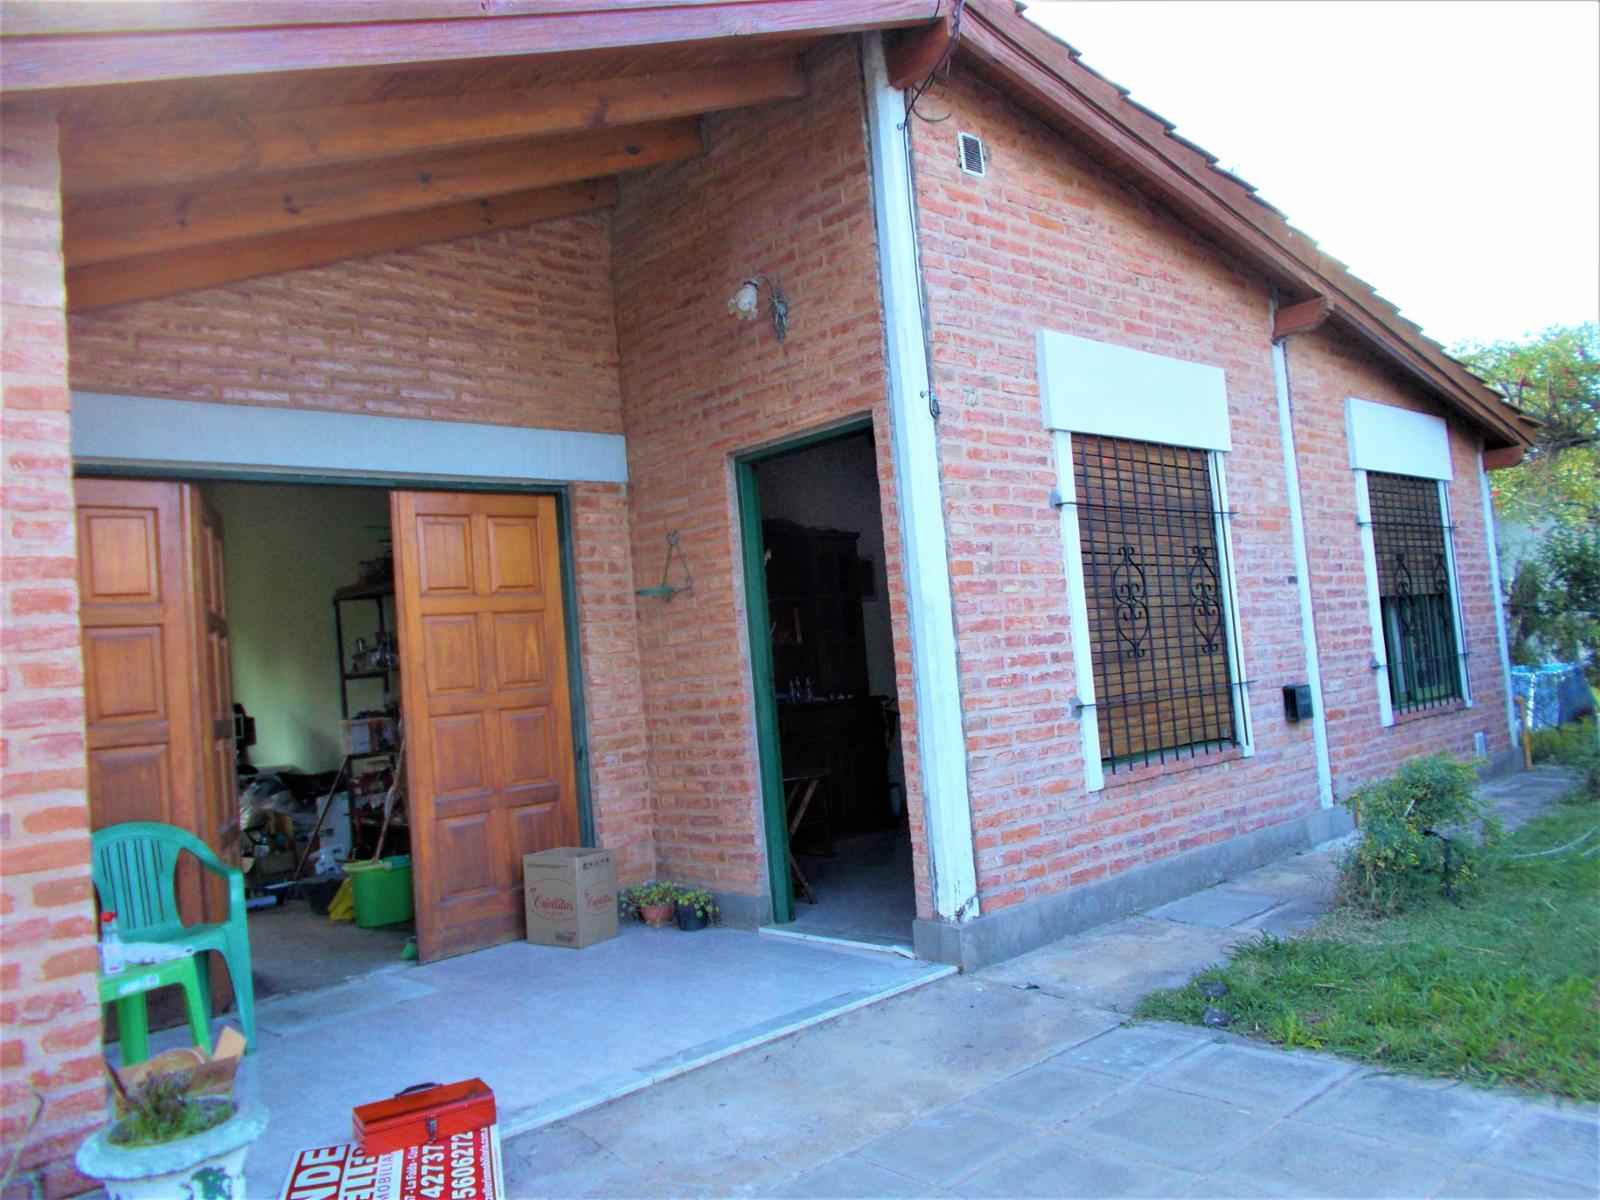 Casa 2 dormitorios, Jard�n y Cochera, Huerta Grande, C�rdoba